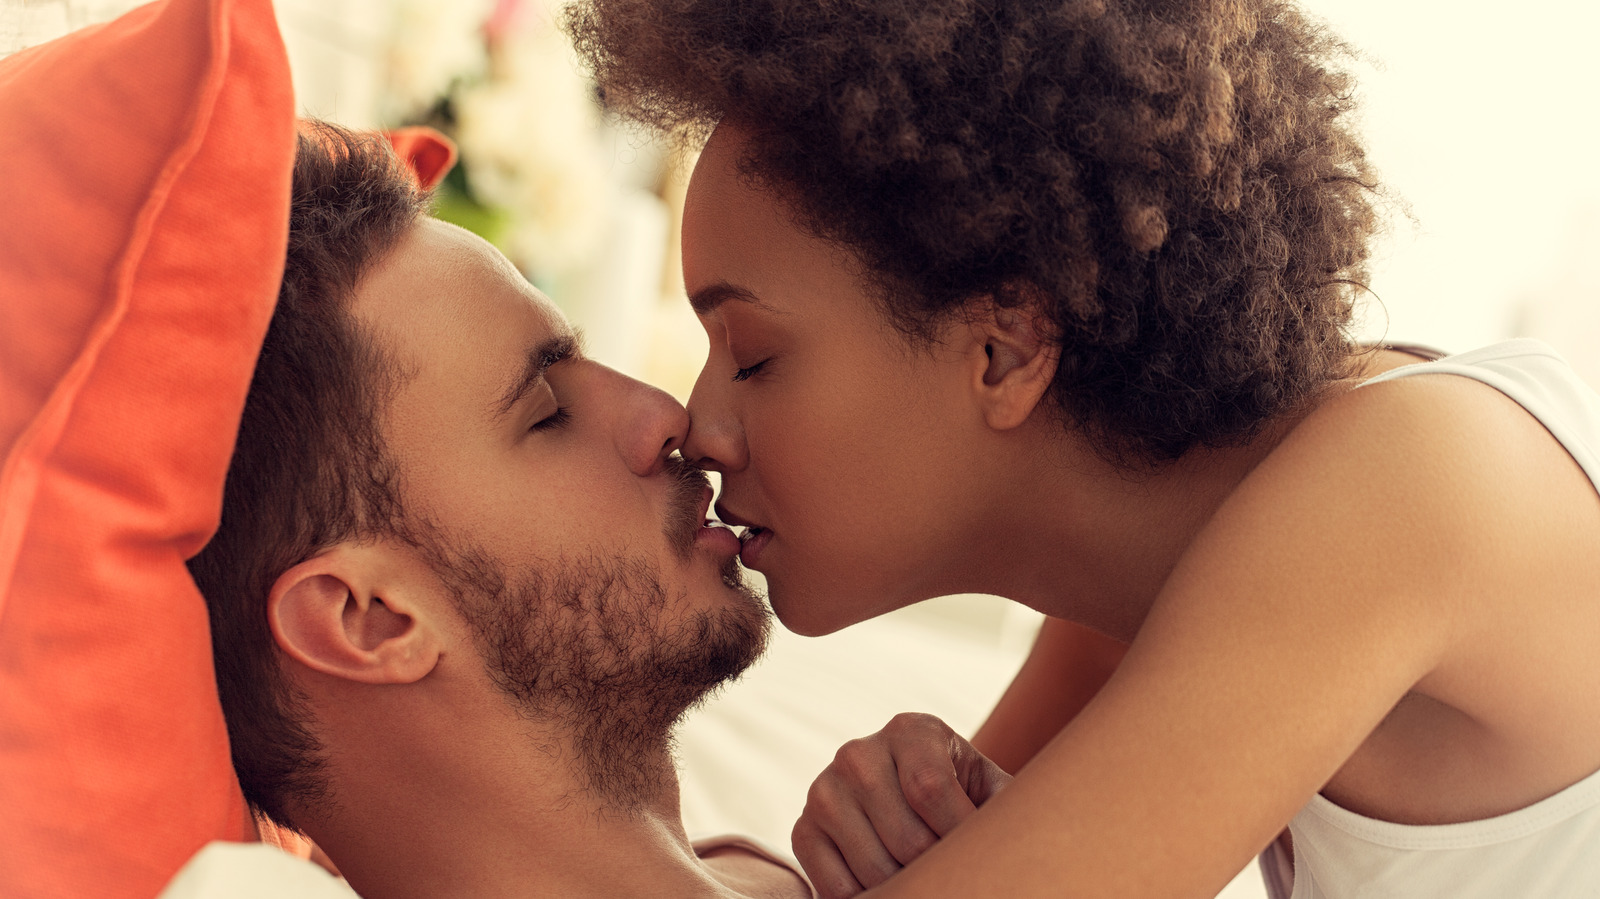 White man making love to a black woman